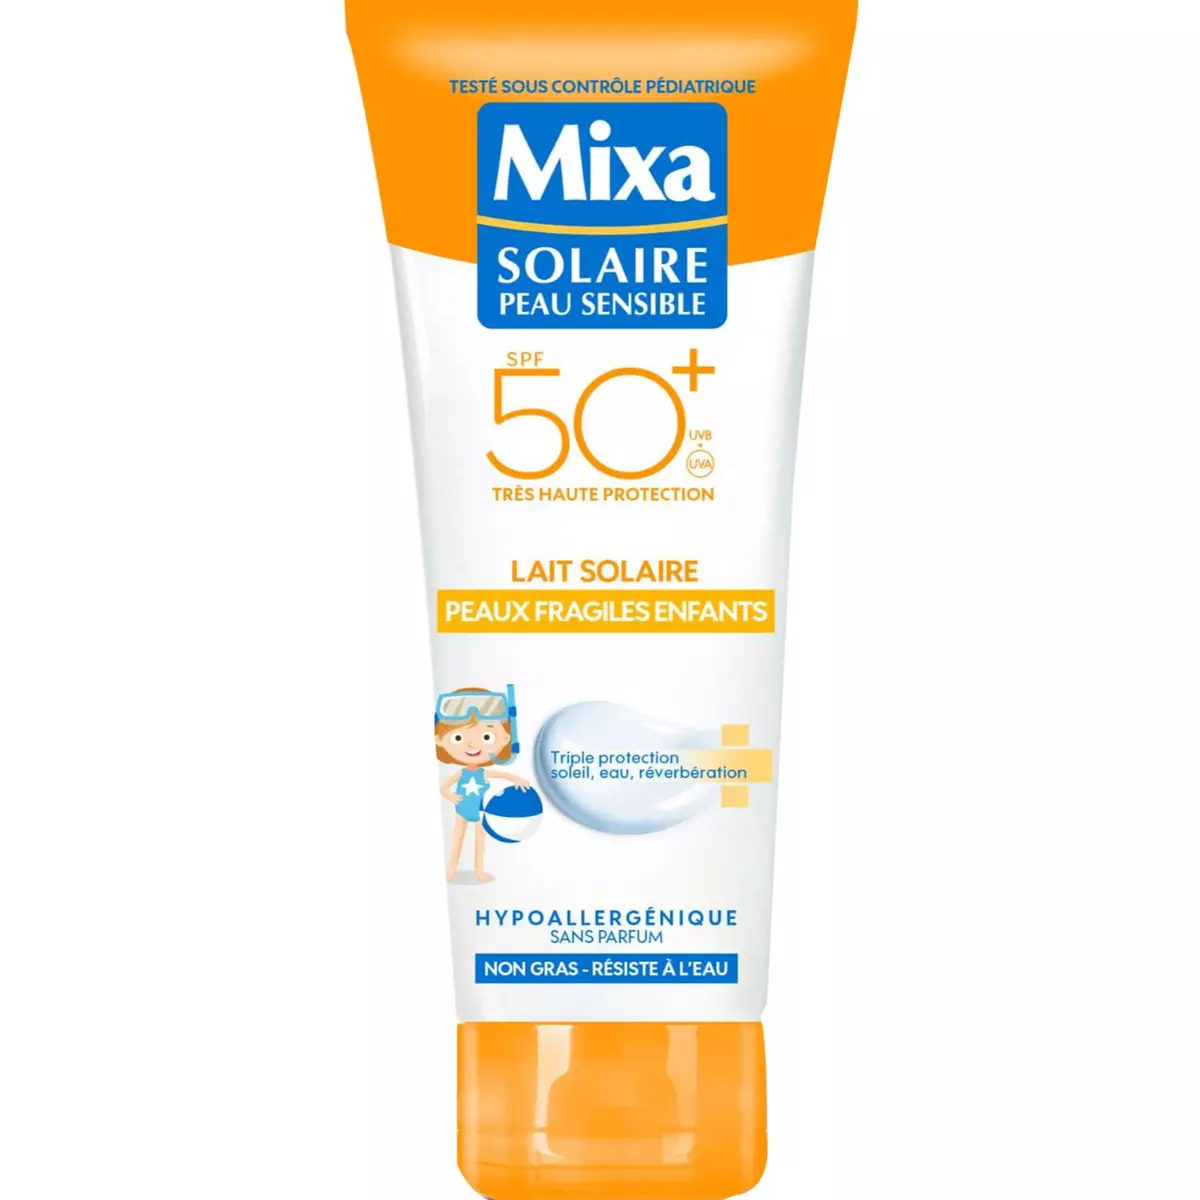 MIXA Lait solaire enfants peaux fragiles SPF50+ 200ml